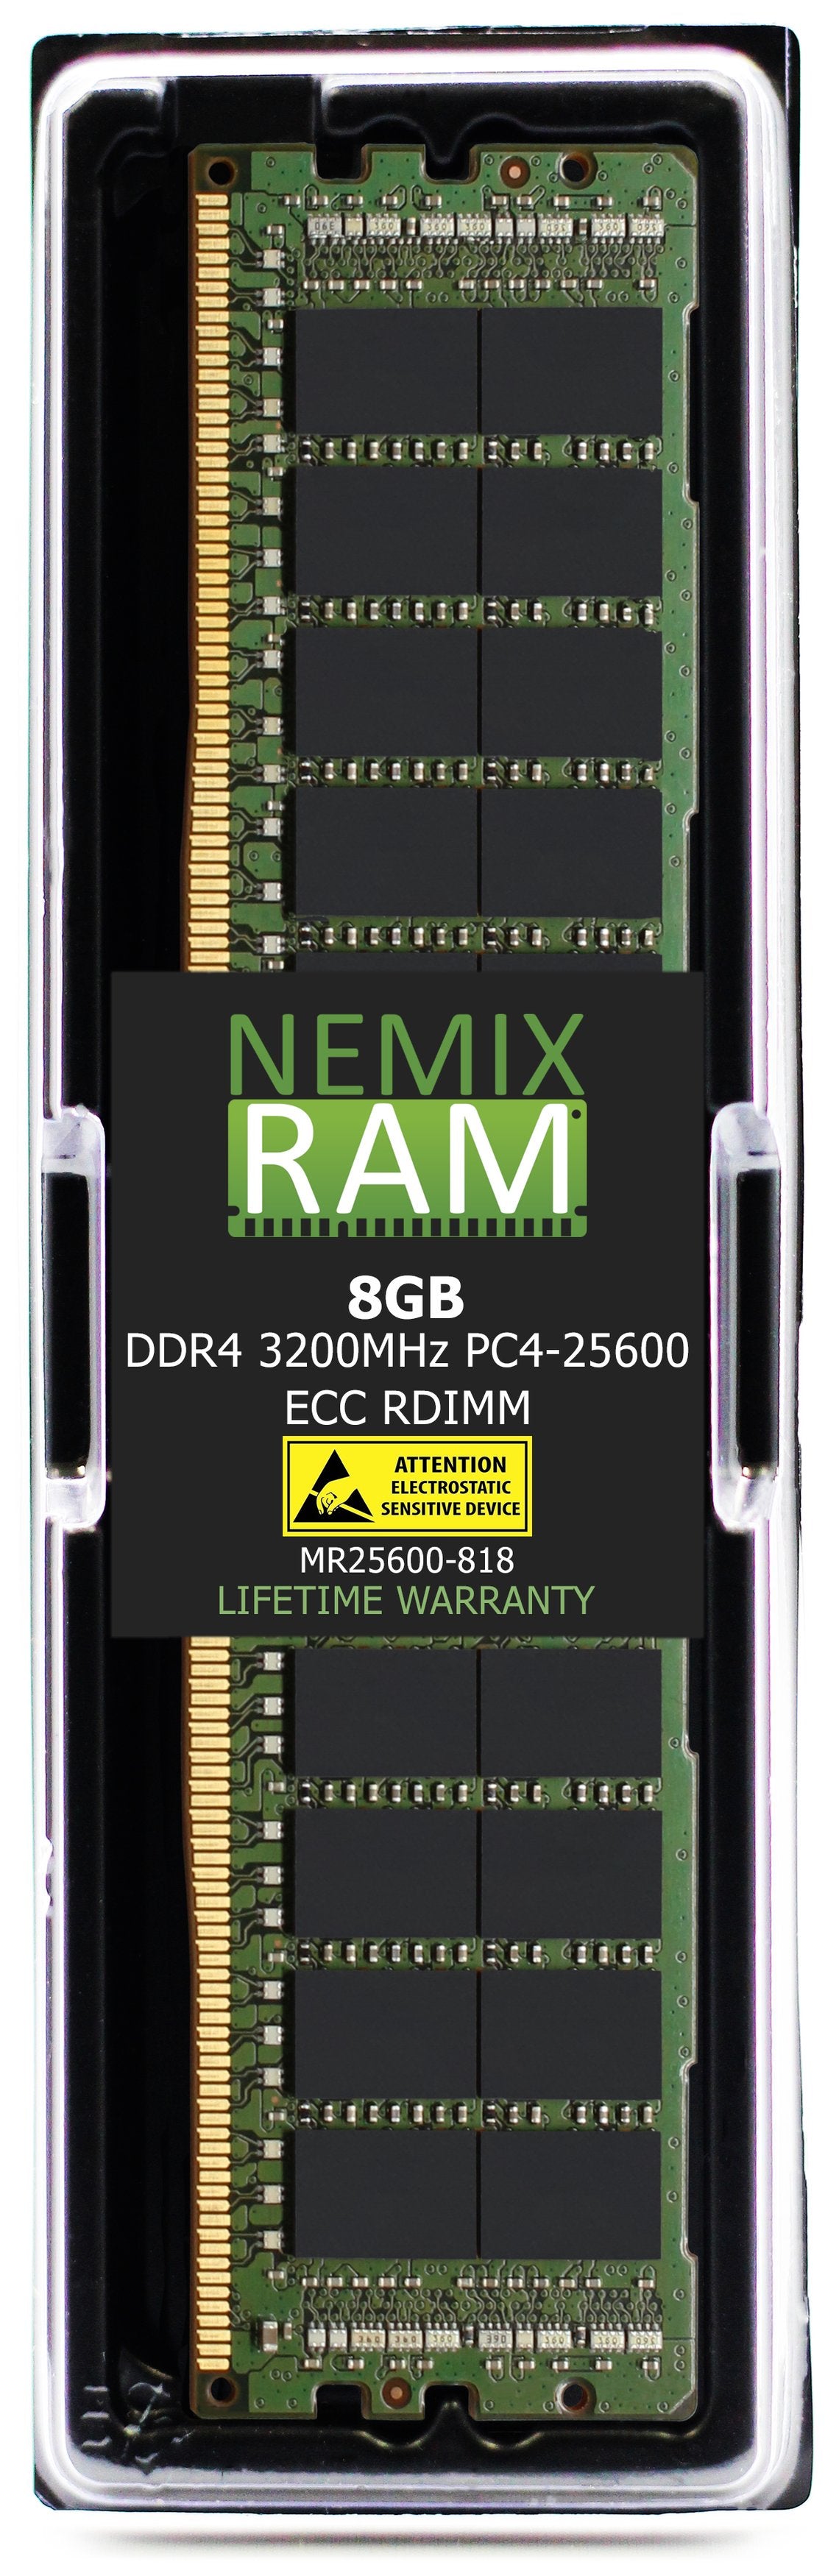 DELL PowerEdge R750XA Rack Server Memory Upgrade